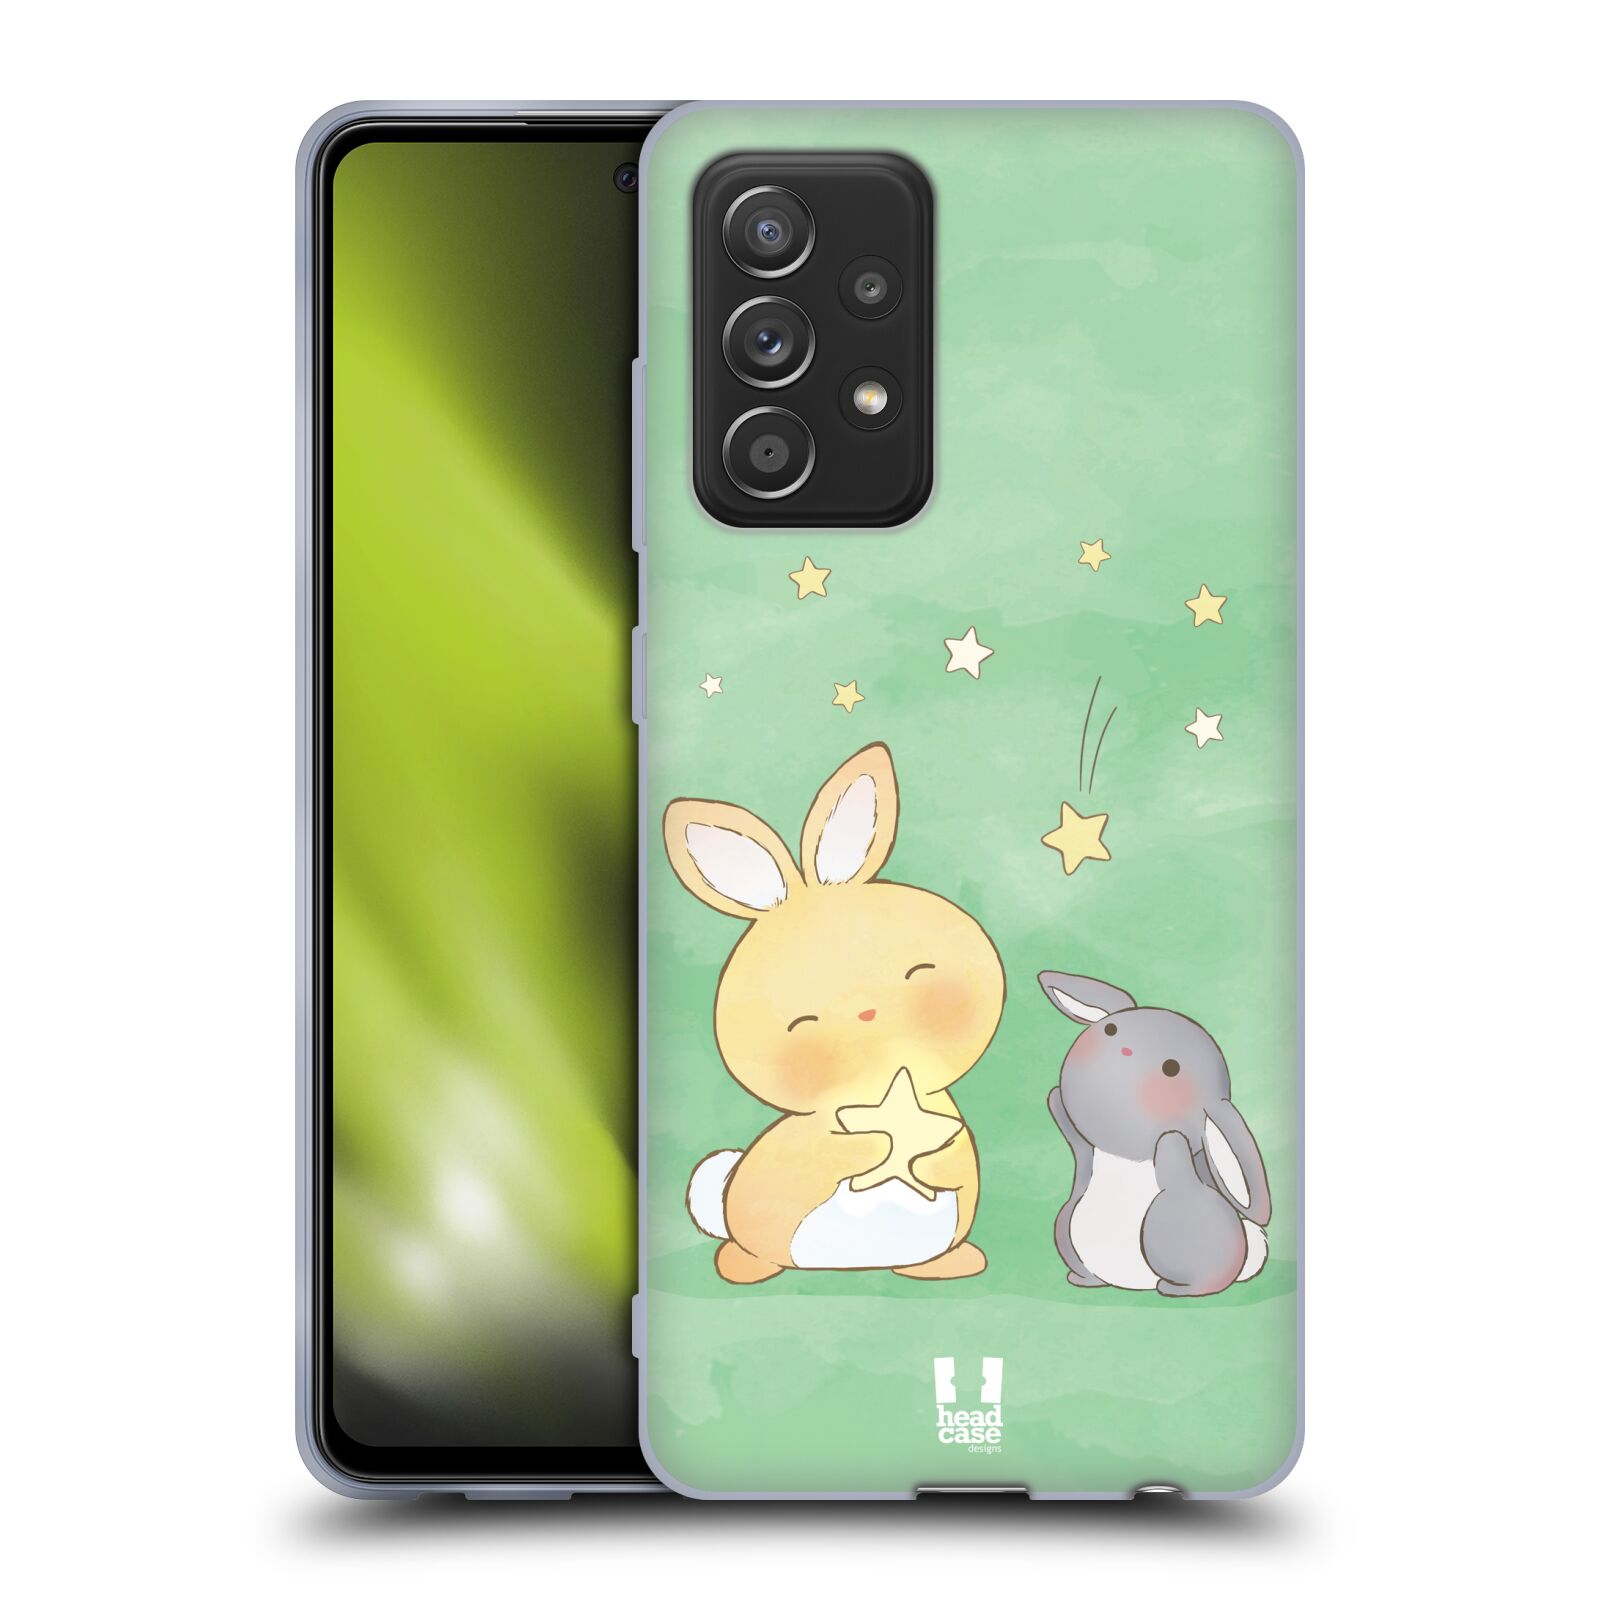 Plastový obal HEAD CASE na mobil Samsung Galaxy A52 / A52 5G / A52s 5G vzor králíček a hvězdy zelená